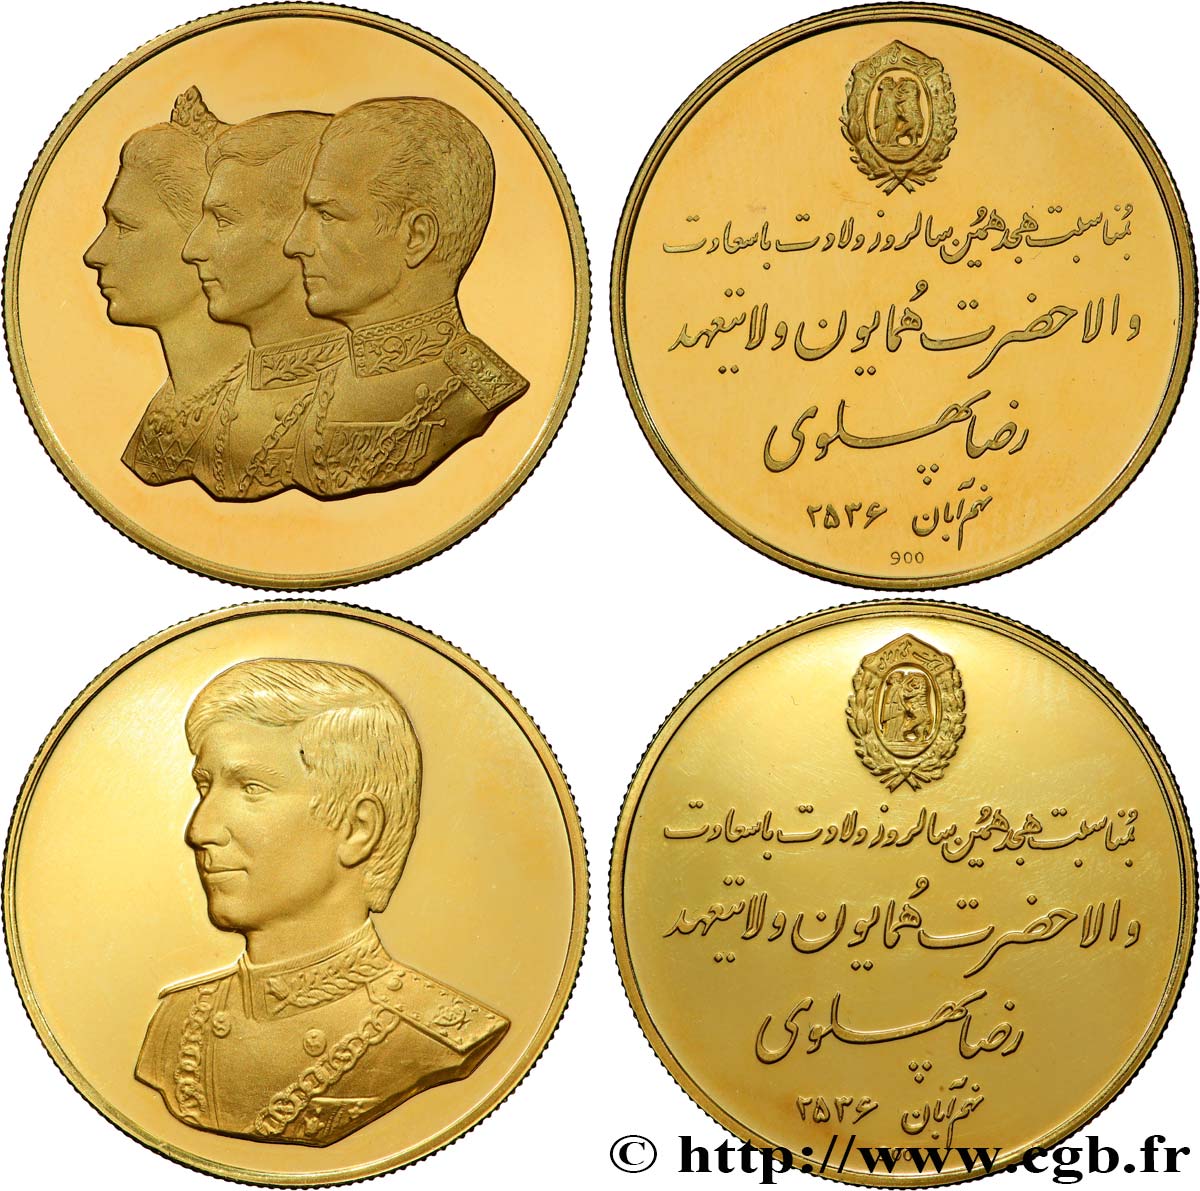 IRAN - MOHAMMAD RIZA PAHLAVI SHAH Lot de 2 médailles, 18e anniversaire du prince héritier Reza Pahlavi SUP+